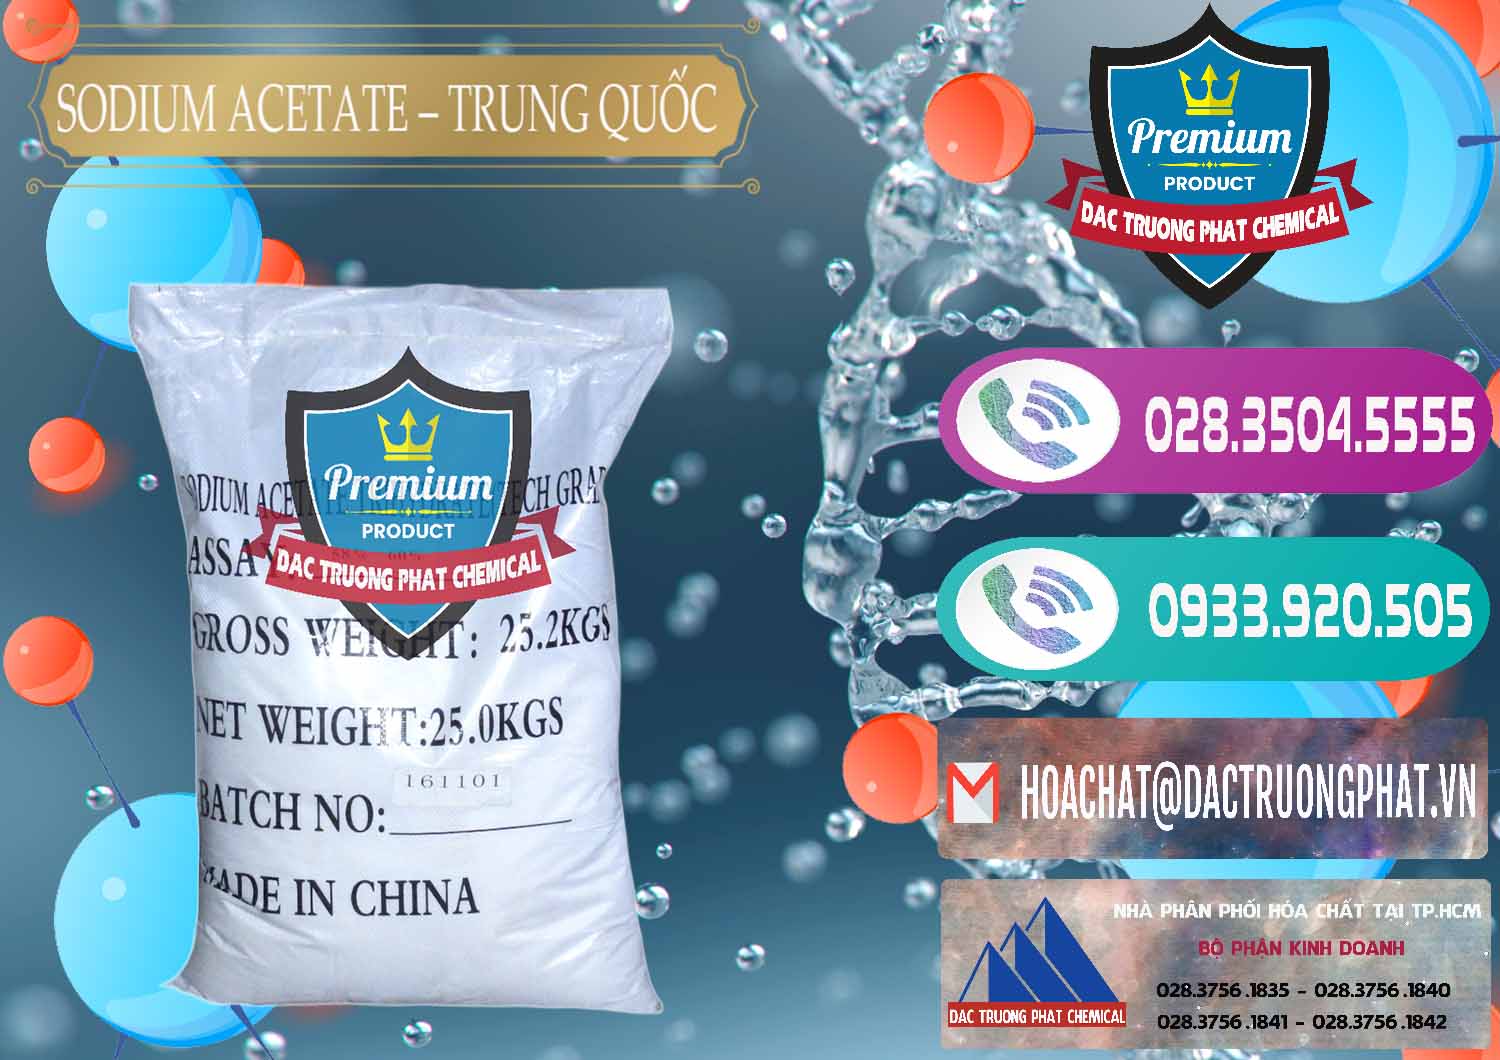 Nơi chuyên cung cấp và bán Sodium Acetate - Natri Acetate Trung Quốc China - 0134 - Cty chuyên phân phối - bán hóa chất tại TP.HCM - hoachatxulynuoc.com